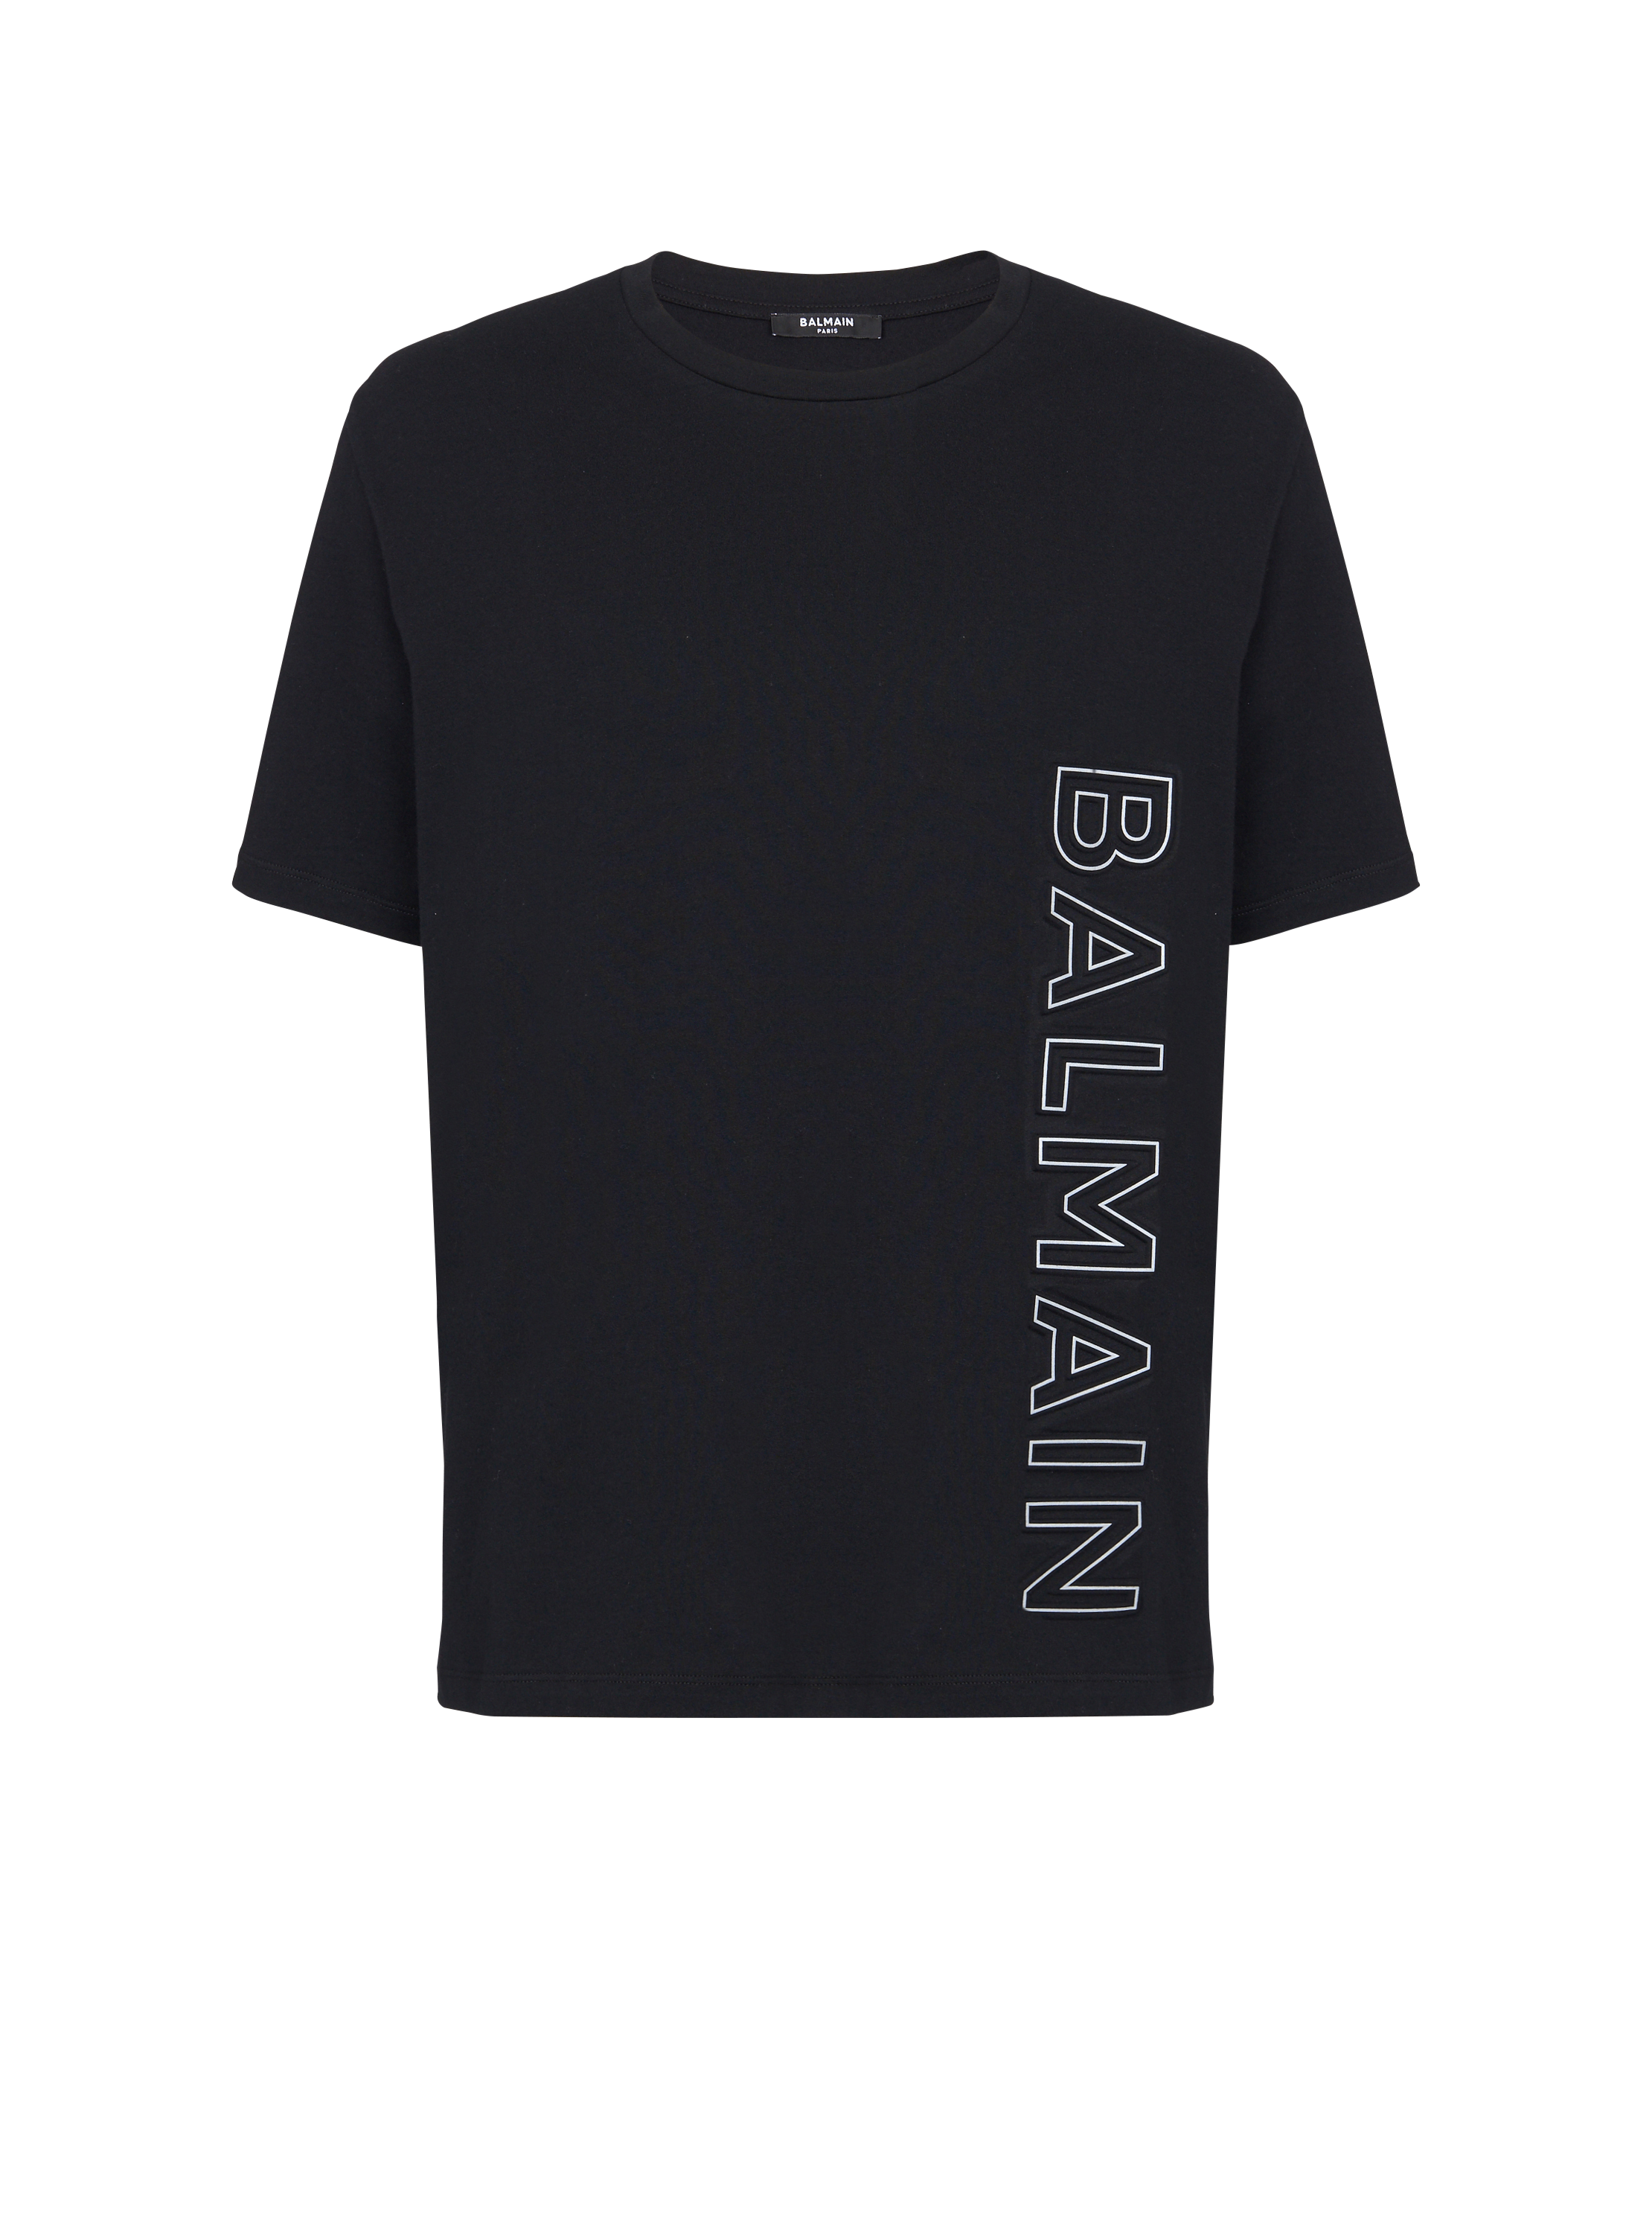 Geprägtes Balmain T-shirt, schwarz, hi-res